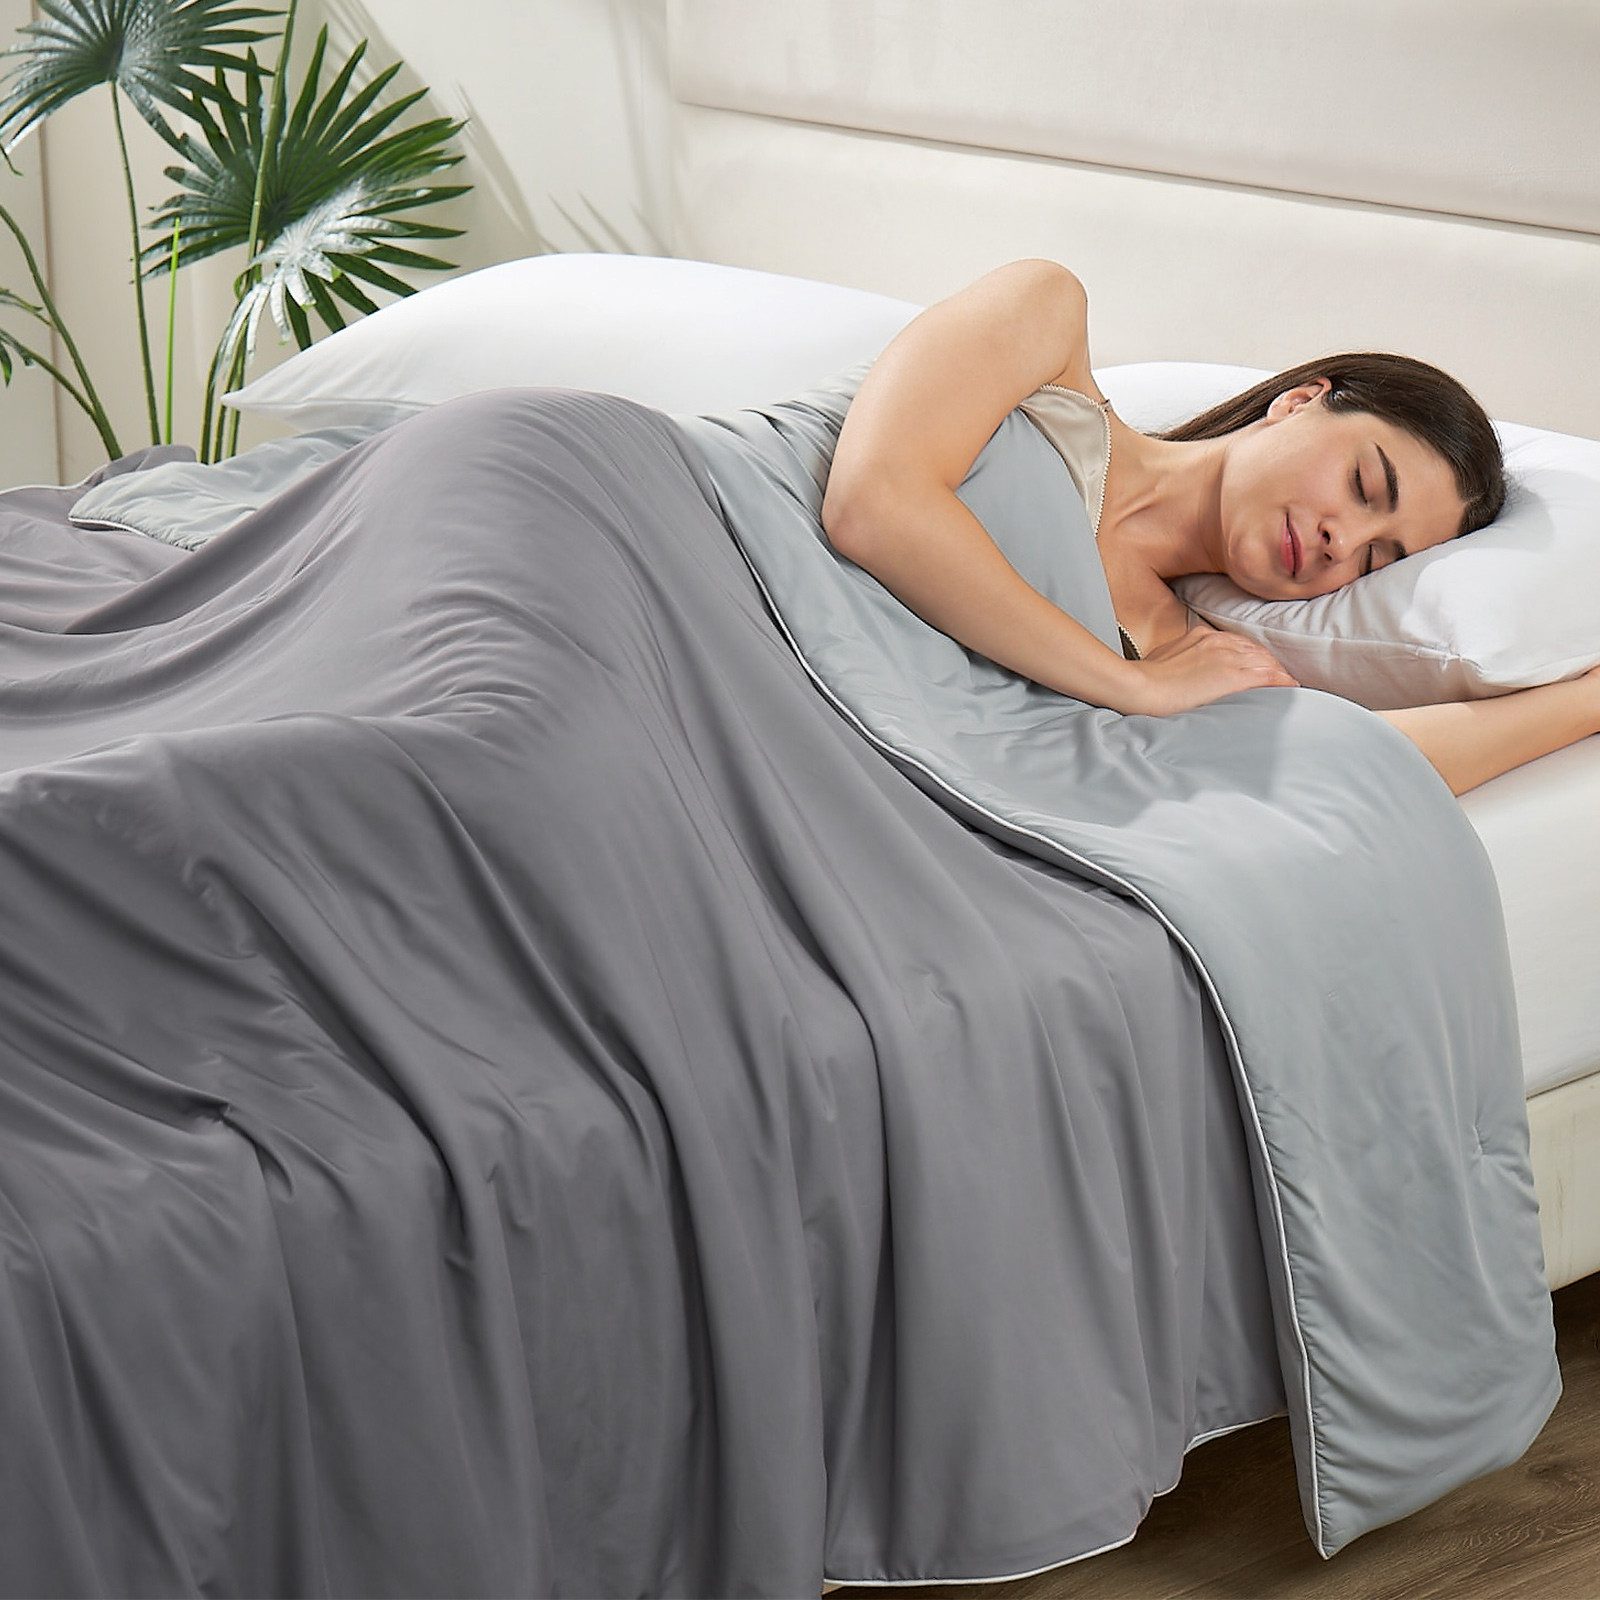 Sommerbettdecke, 150x200cm allmähliche Veränderung Bettdecke für Sommer, Elegear, Füllung: 90GSM seidenähnliche Baumwolle